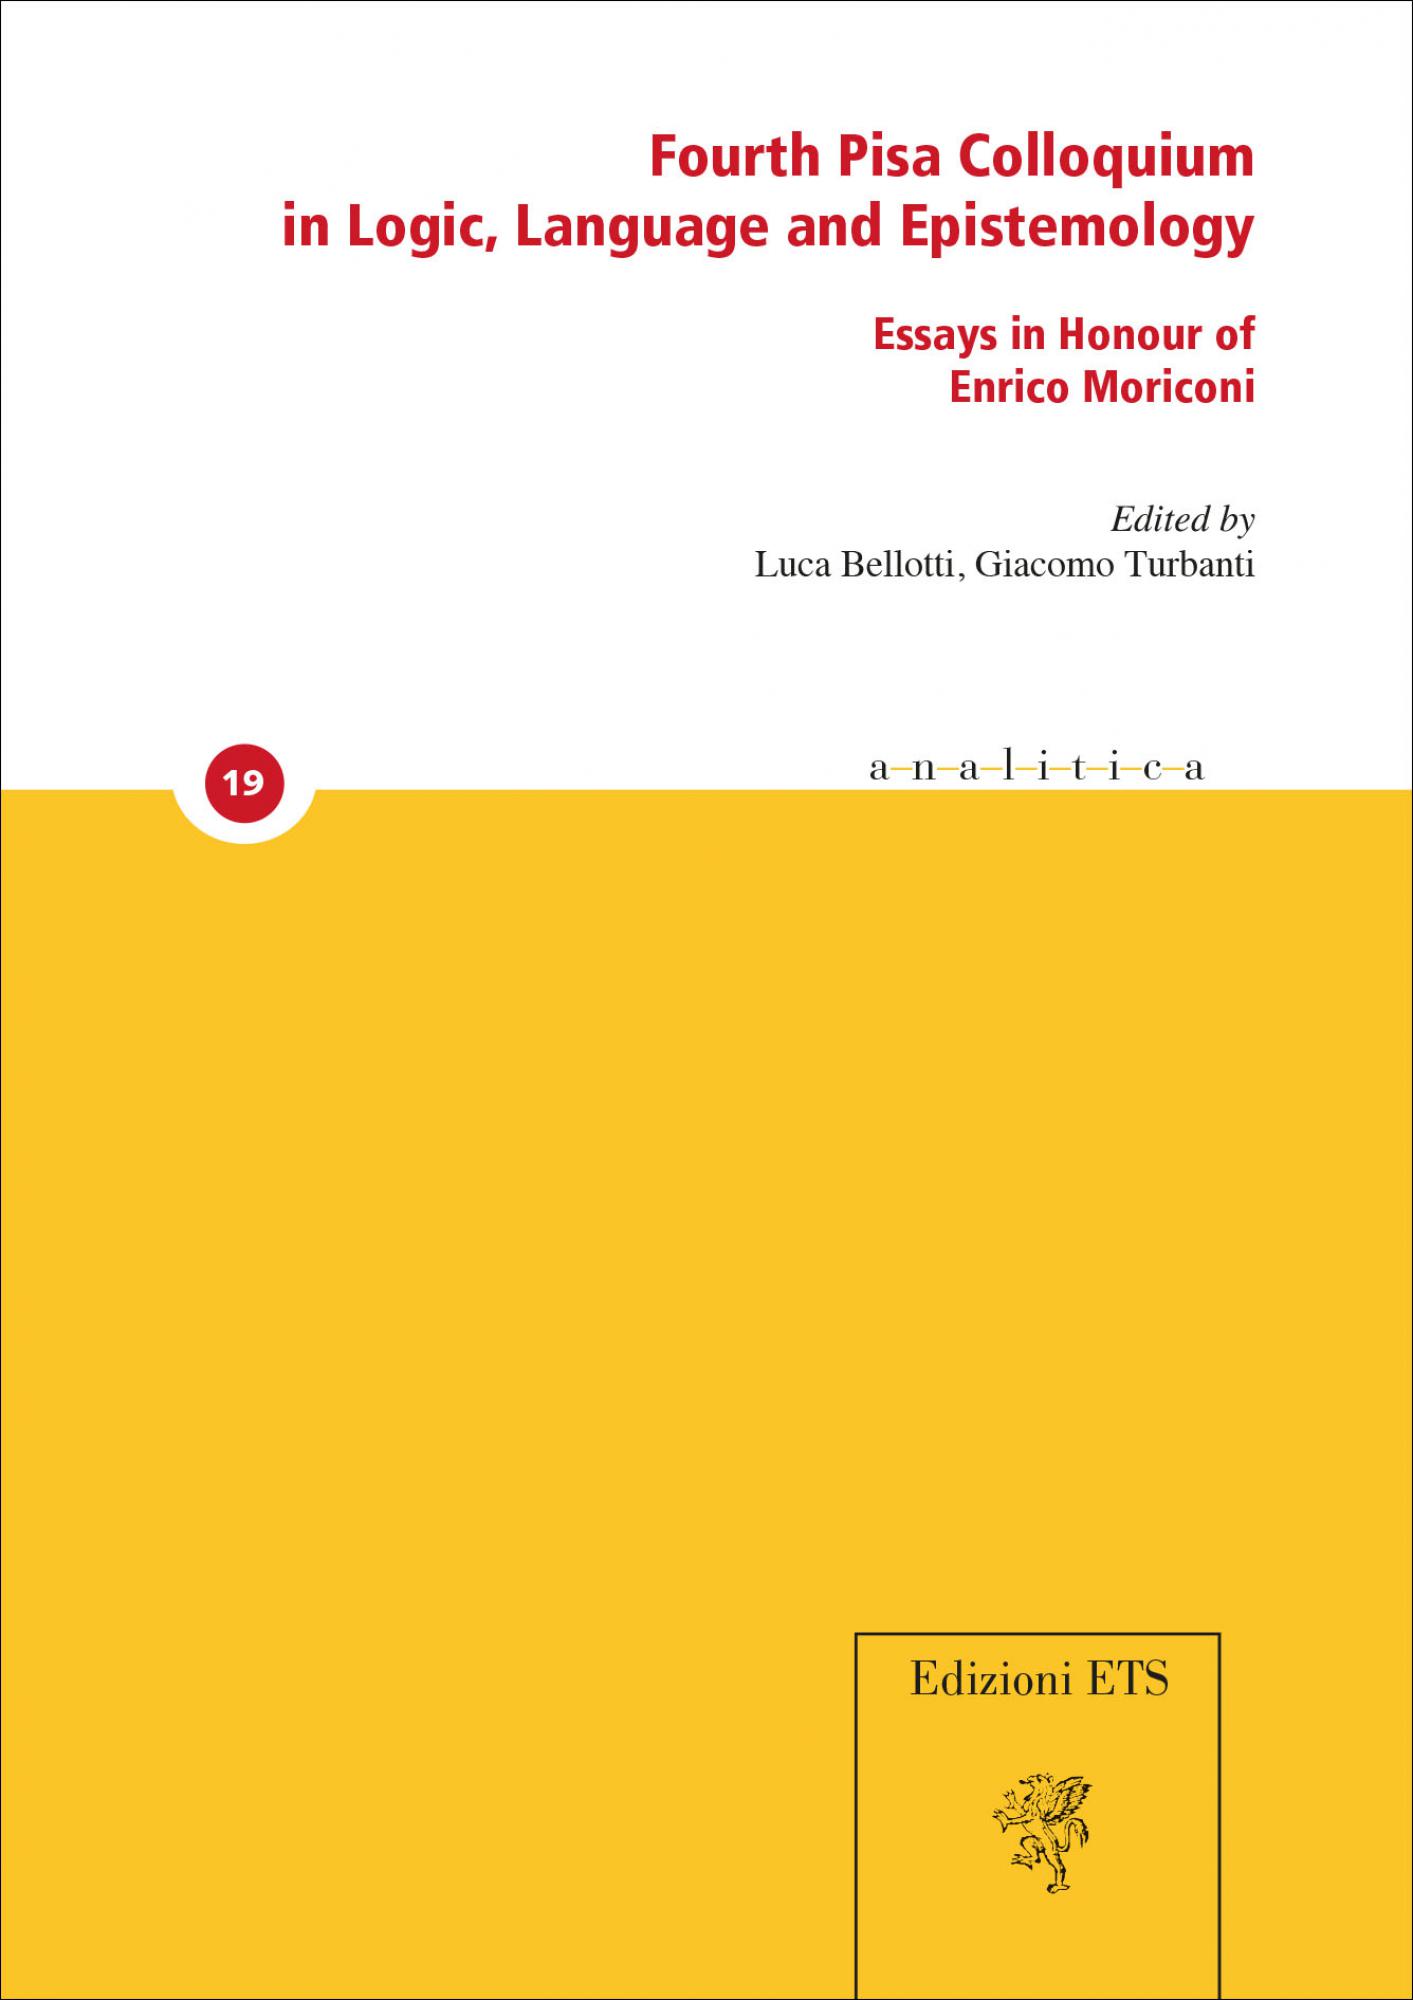 Fourth Pisa Colloquium in Logic, Language and Epistemology.Essays in Honour of Enrico Moriconi